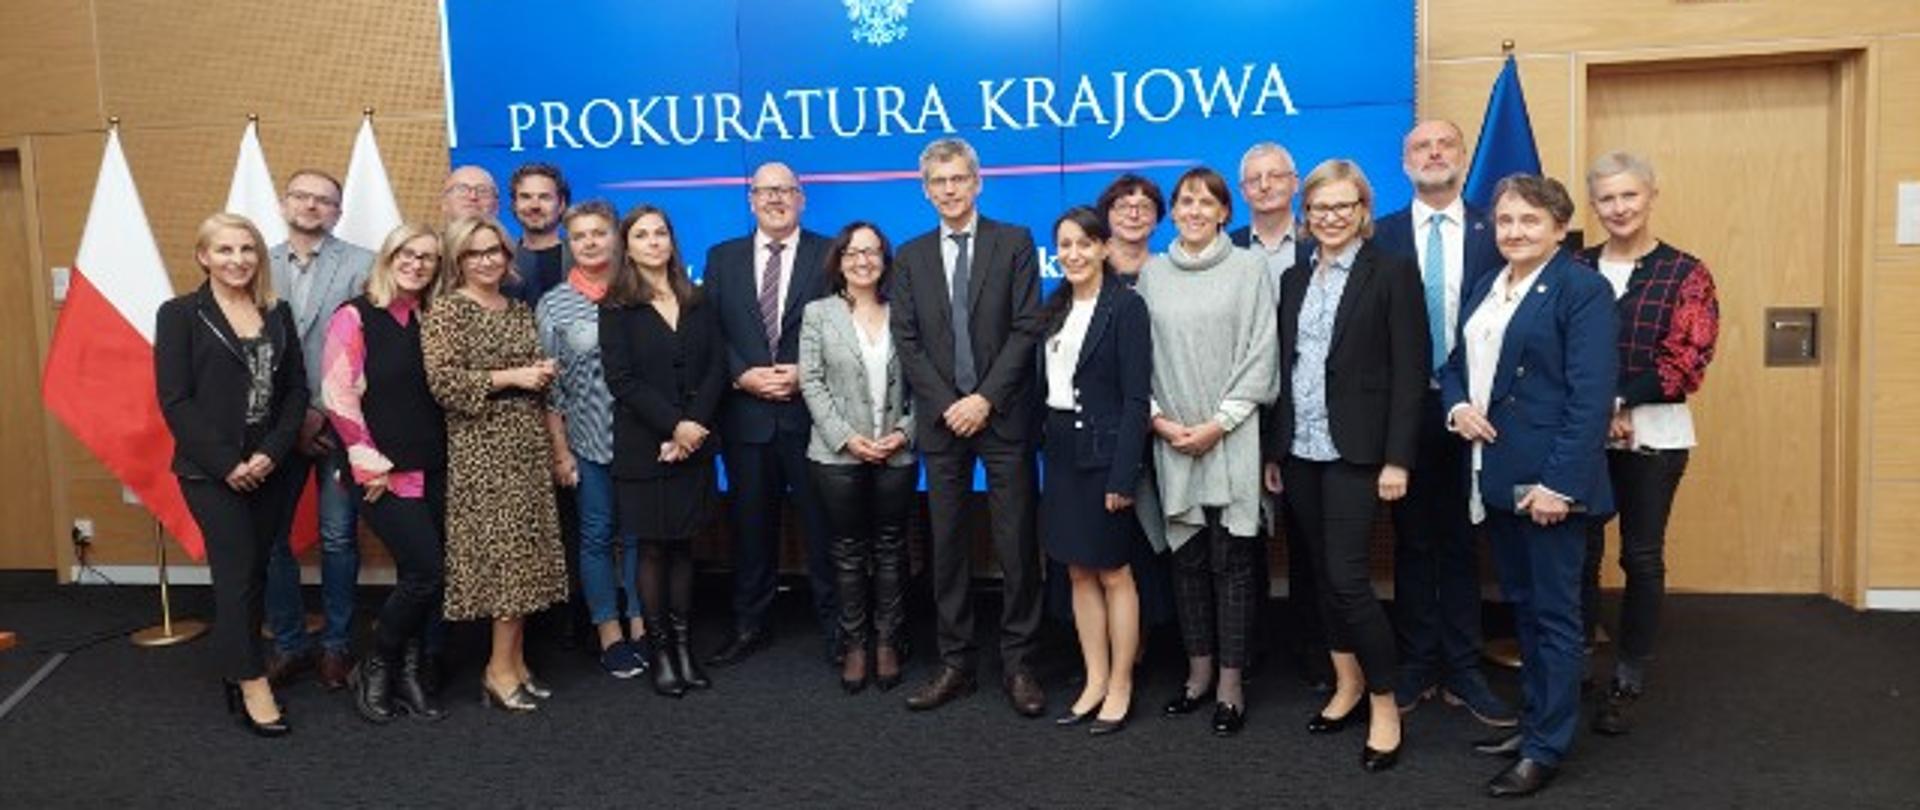 12.Spotkanie Krajowe Punktów Kontaktowych Europejskiej Sieci Sądowej (EJN) w Polsce - zdjęcie grupowe na tle lok Prokuratury Krajowei